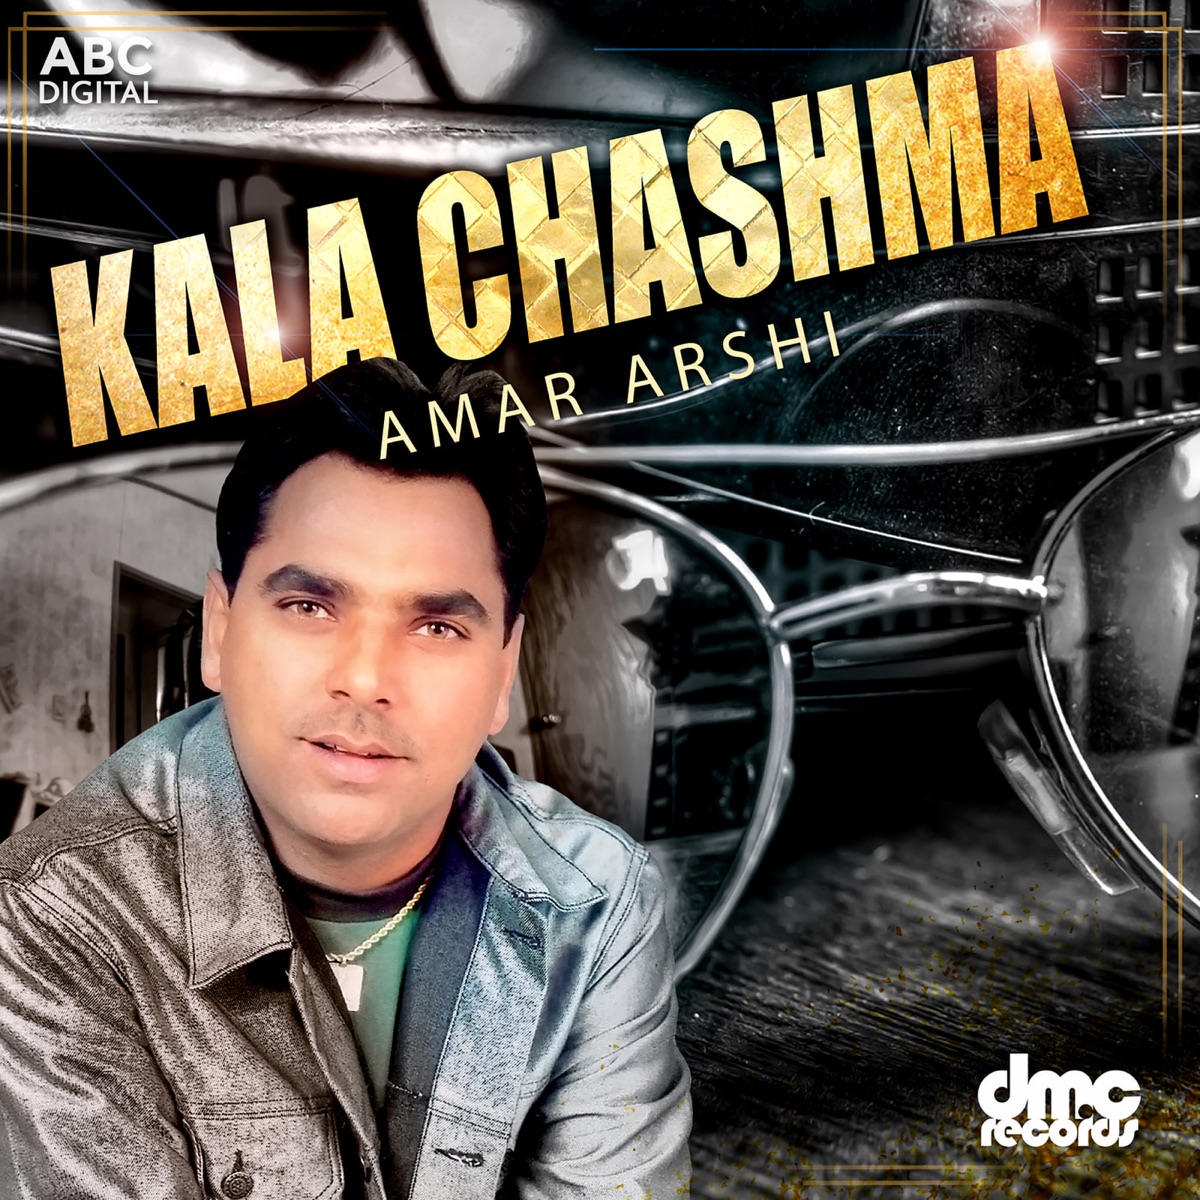 Kala Chashma by Amar Arshi on Apple Music